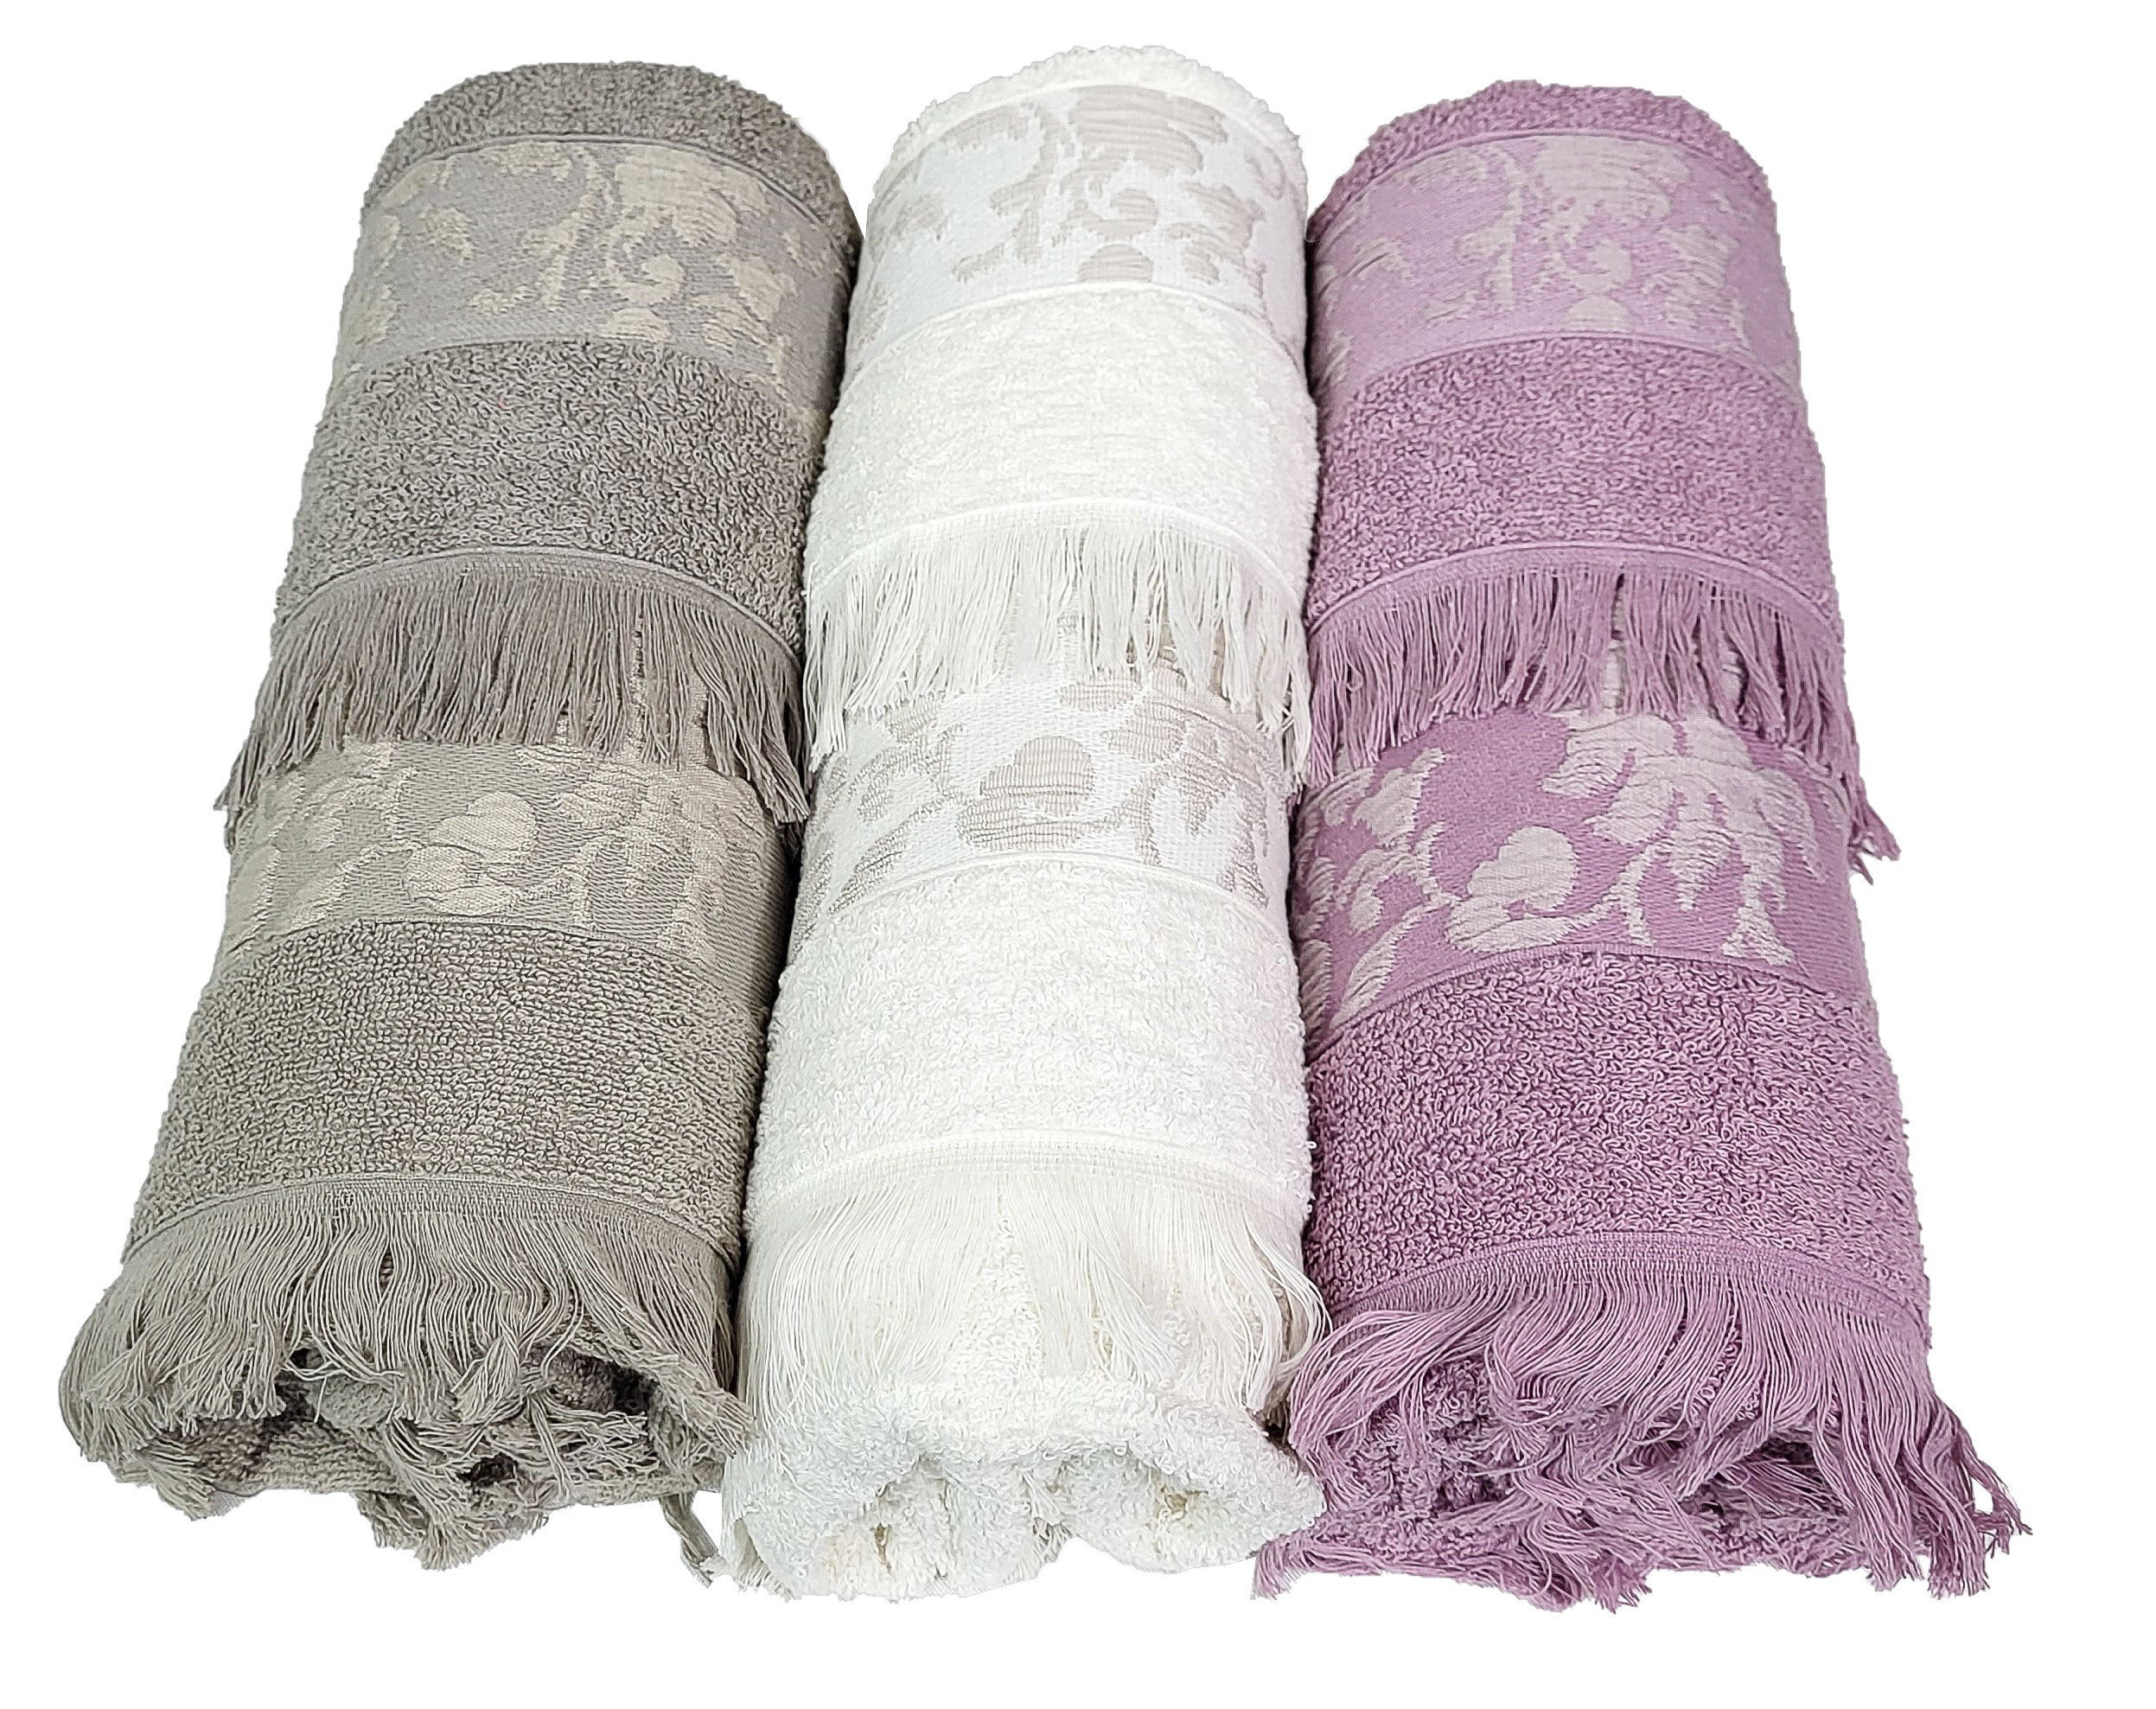 Lotto 3 asciugamani antichi teli bagno grandi canapa ricamato mano frange